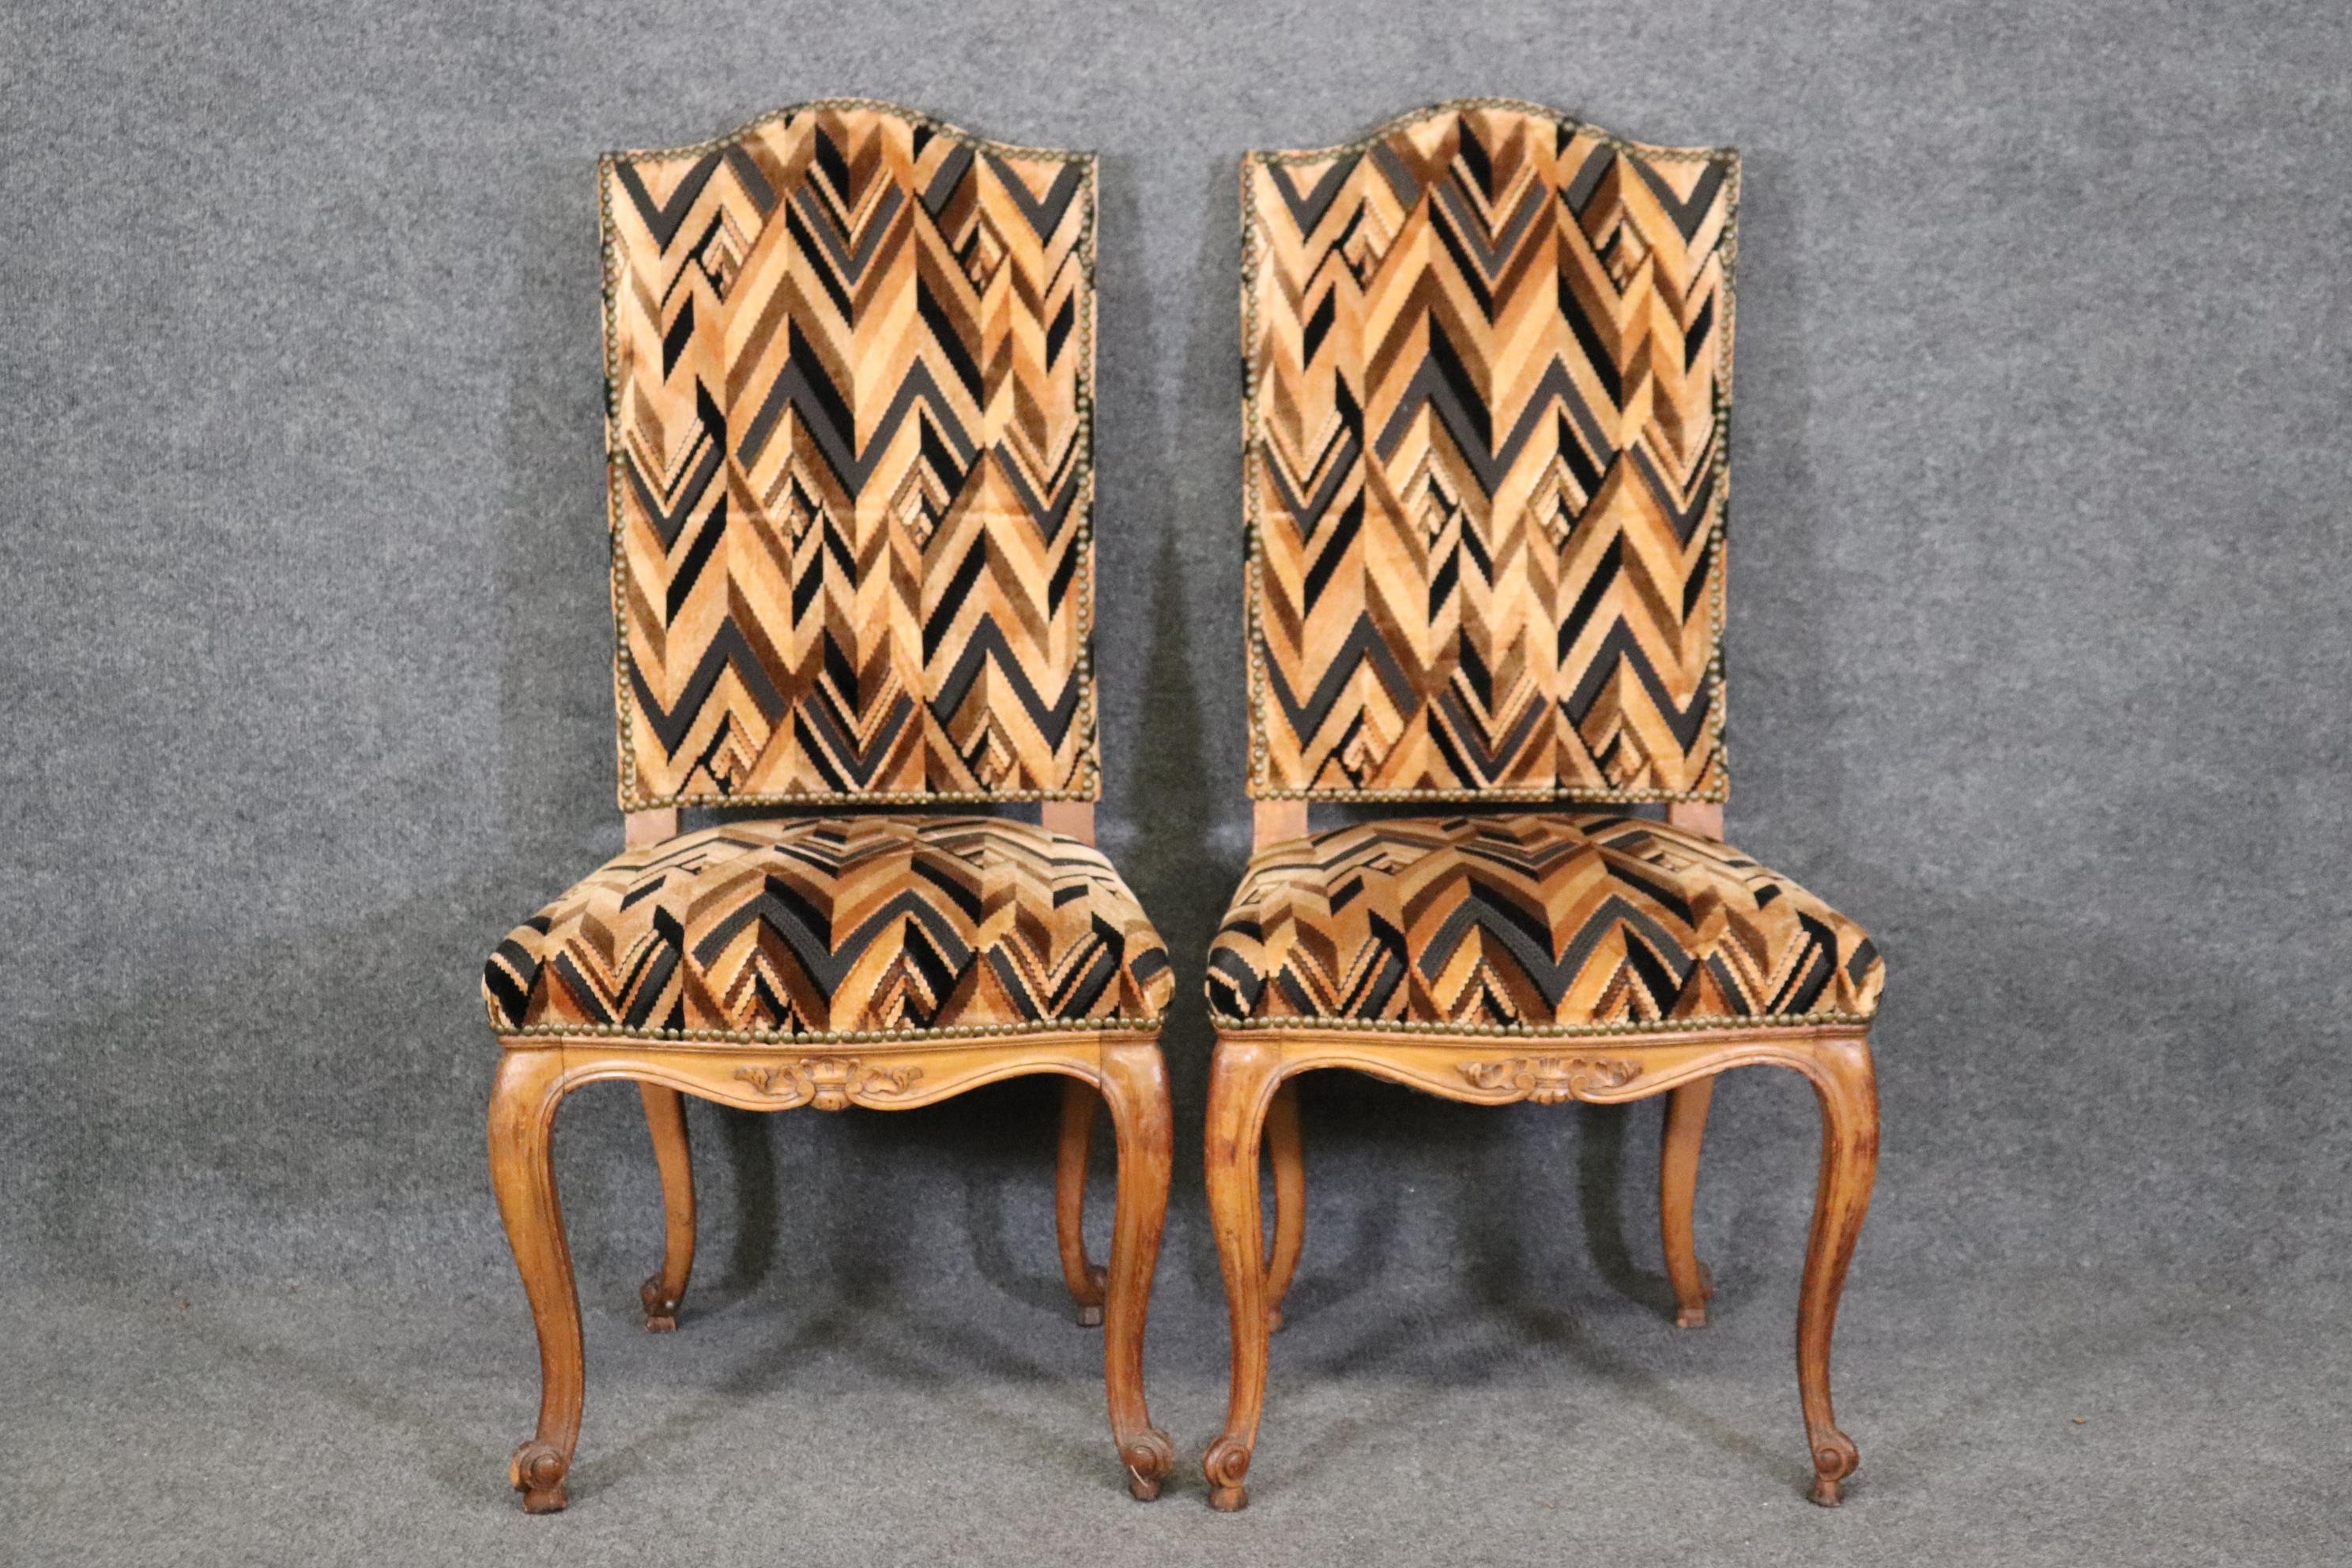 Dies ist ein schönes Paar von Stühlen in gutem Zustand. Die Stühle messen 42,75 hoch x 21 breit x 22,5 tief und haben eine Sitzhöhe von 19 Zoll. Die Stühle sind mit Nägeln verziert und stammen aus den 1920er Jahren. 




Wir können Ihnen bei der